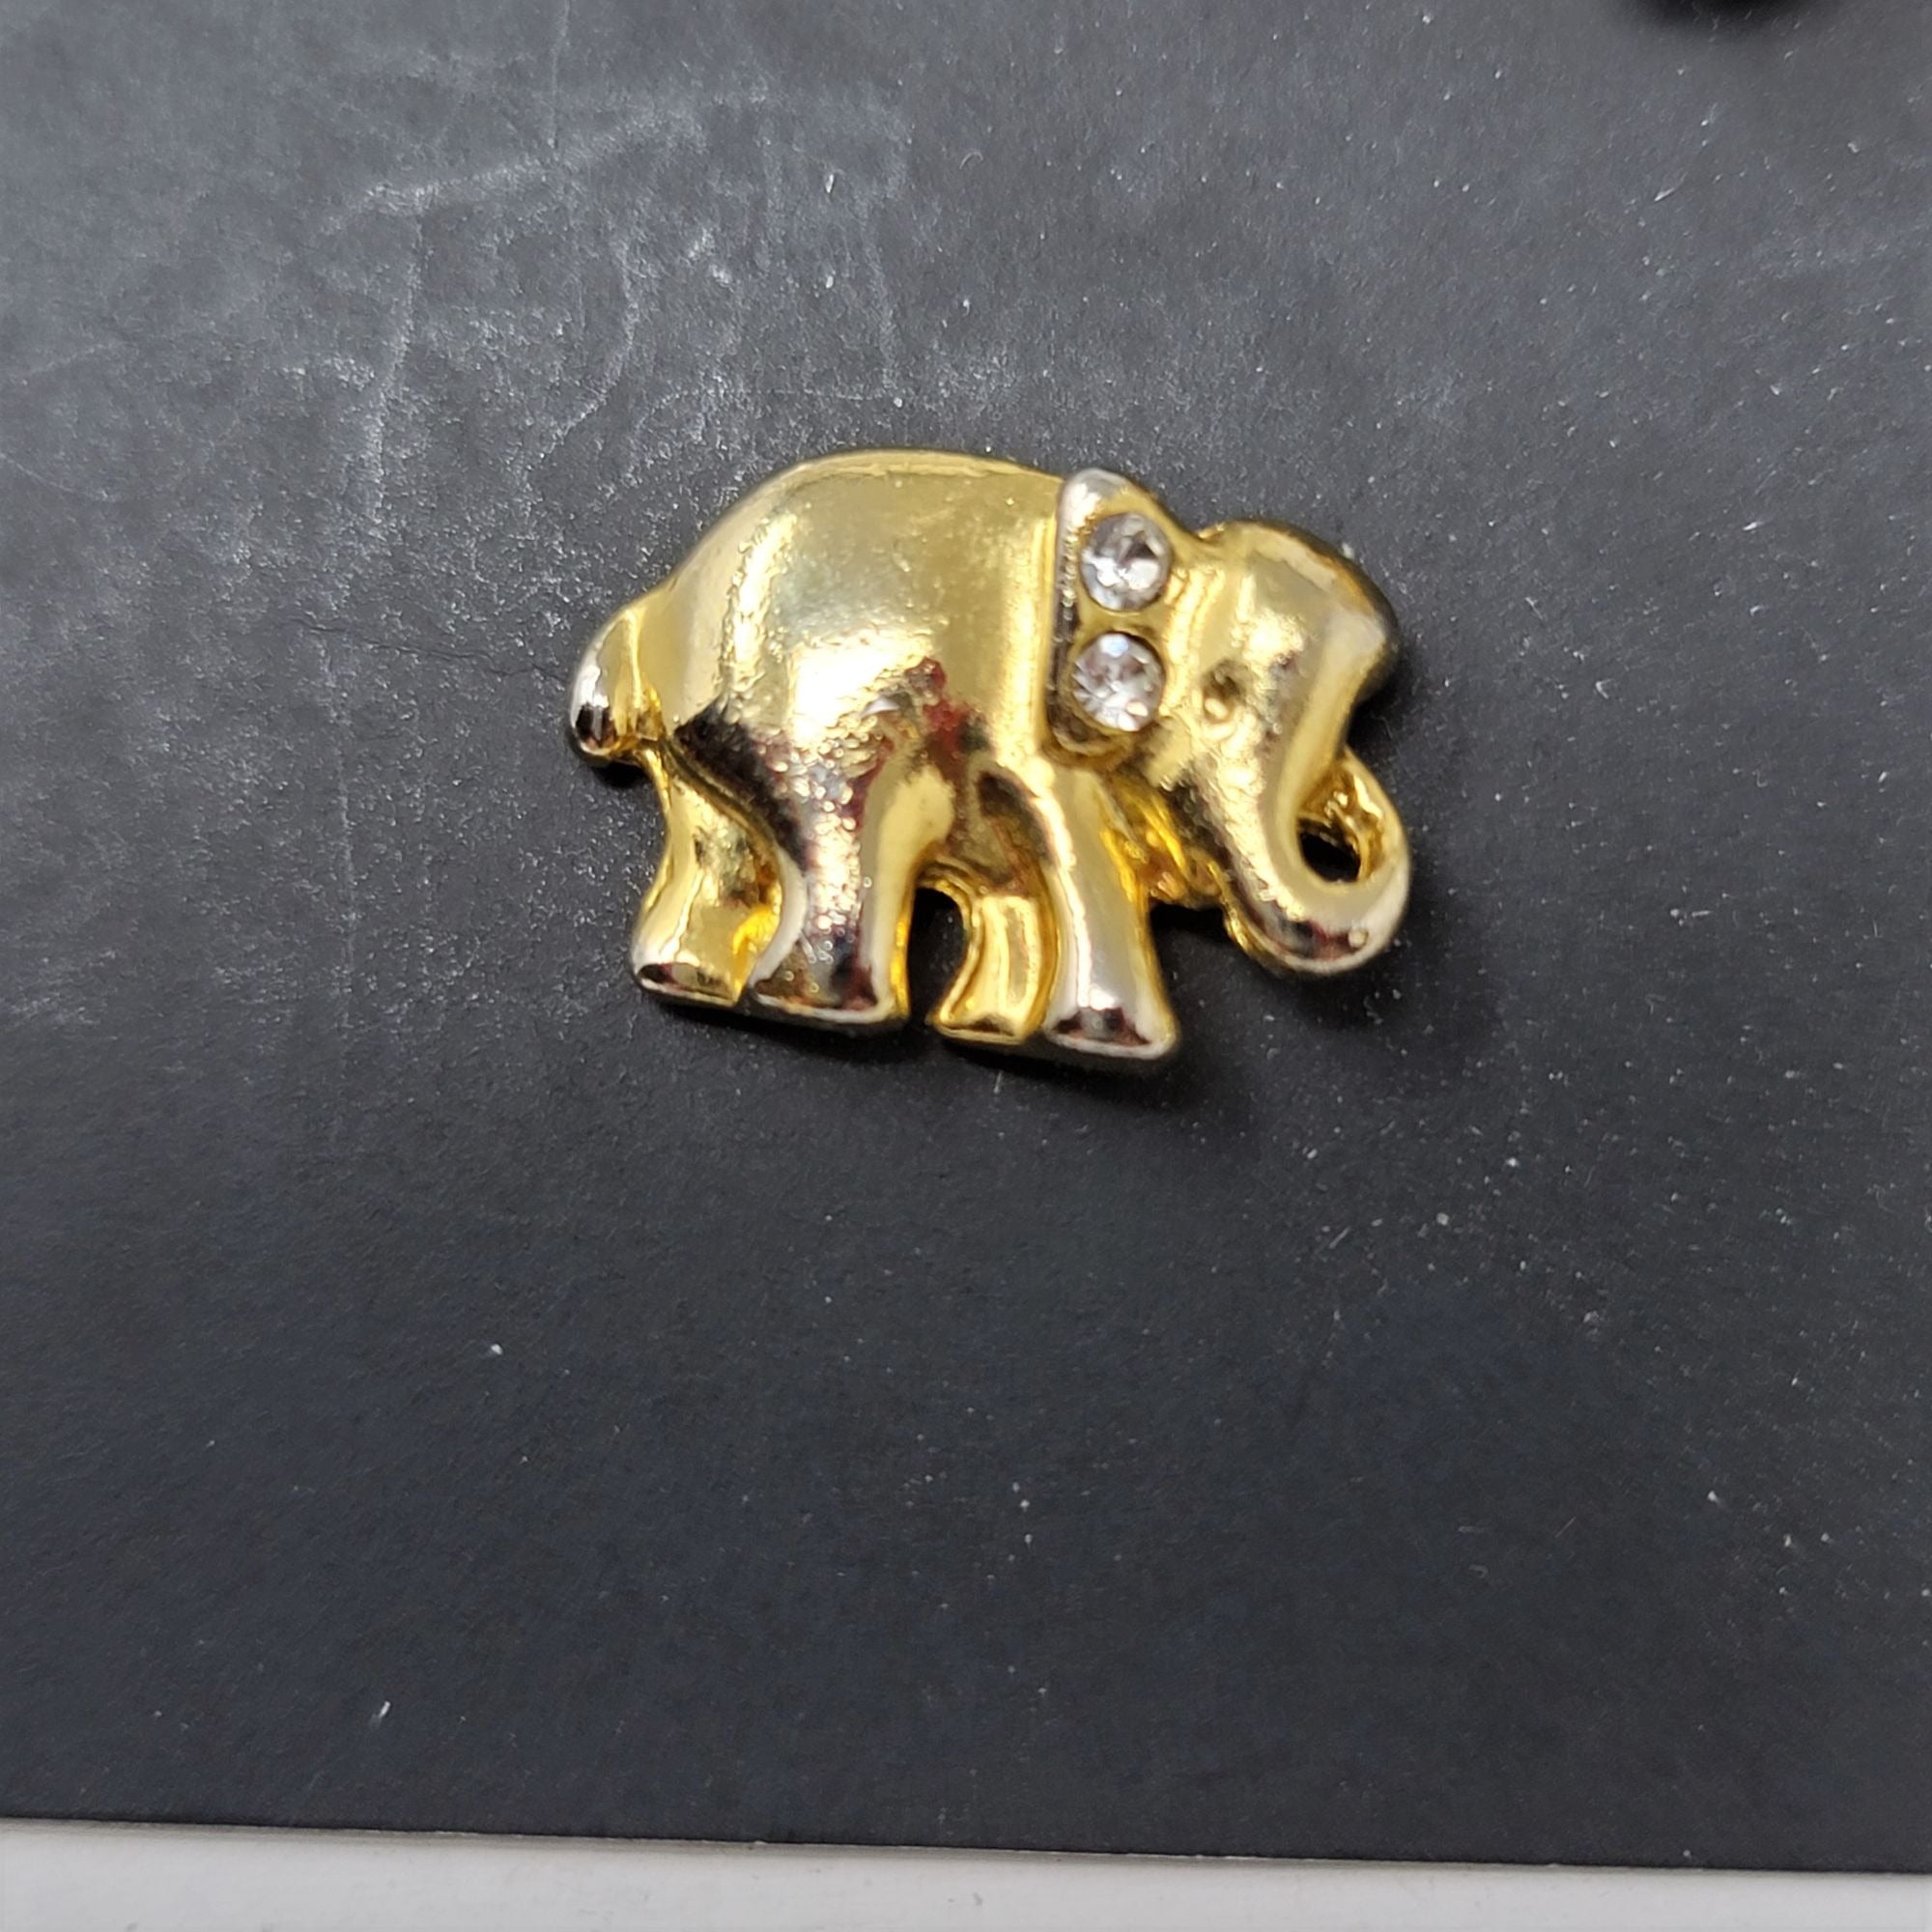 Elephant w/ Rhinestones Pin Brooch & Earring Set Goldtone SWEET